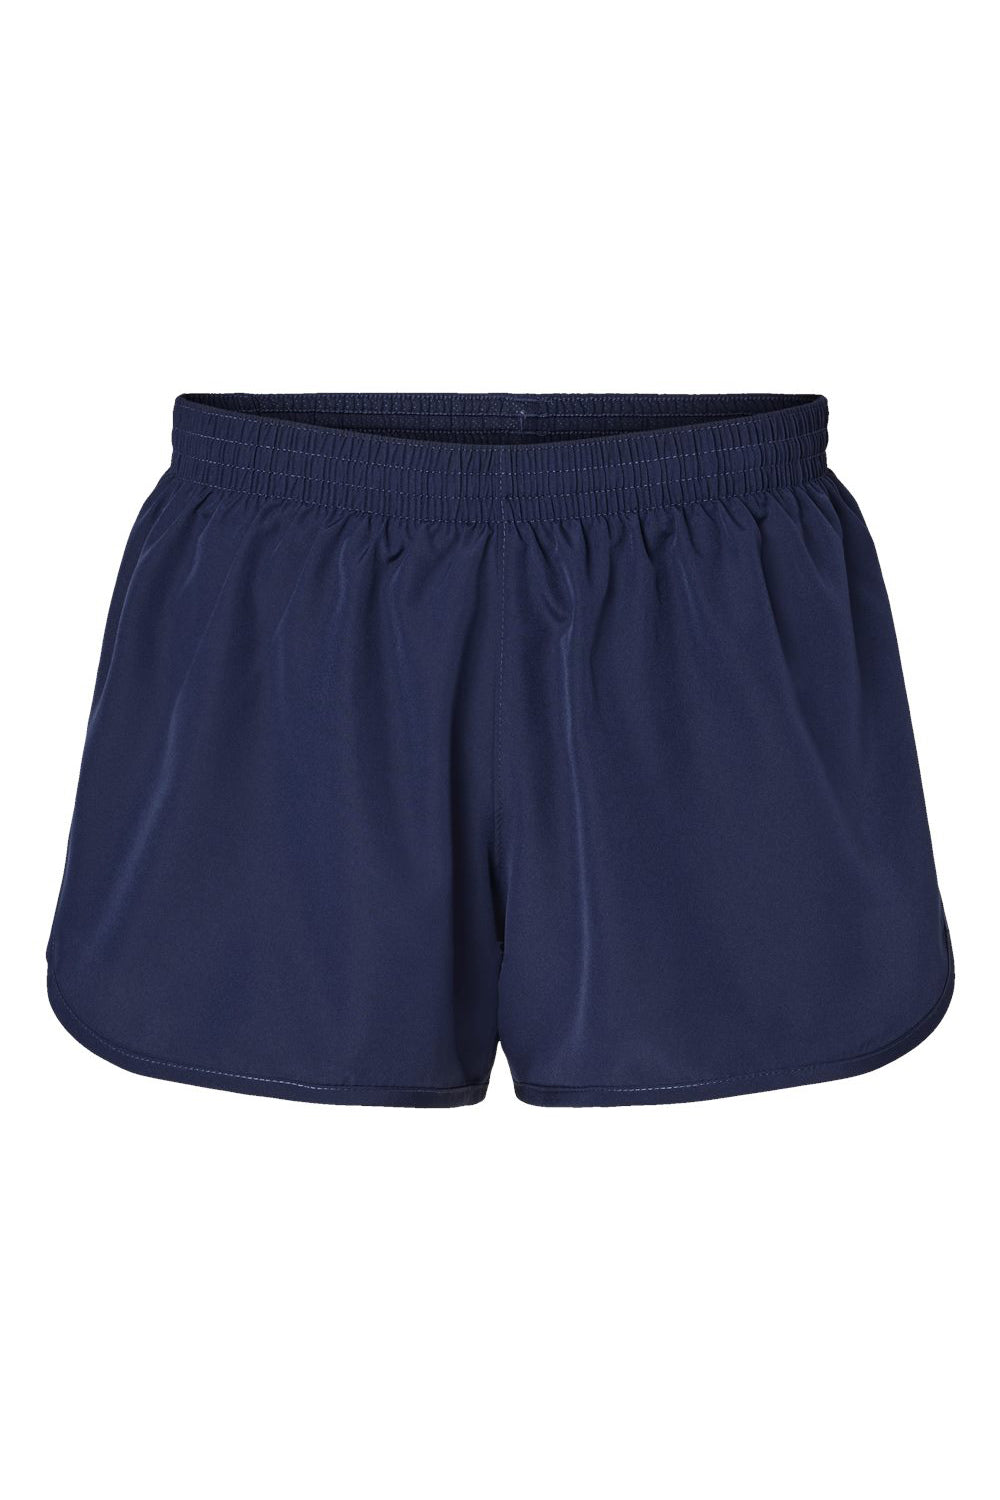 Augusta Sportswear 2430 Womens Wayfarer Moisture Wicking Shorts w/ Internal Pocket Navy Blue Flat Front